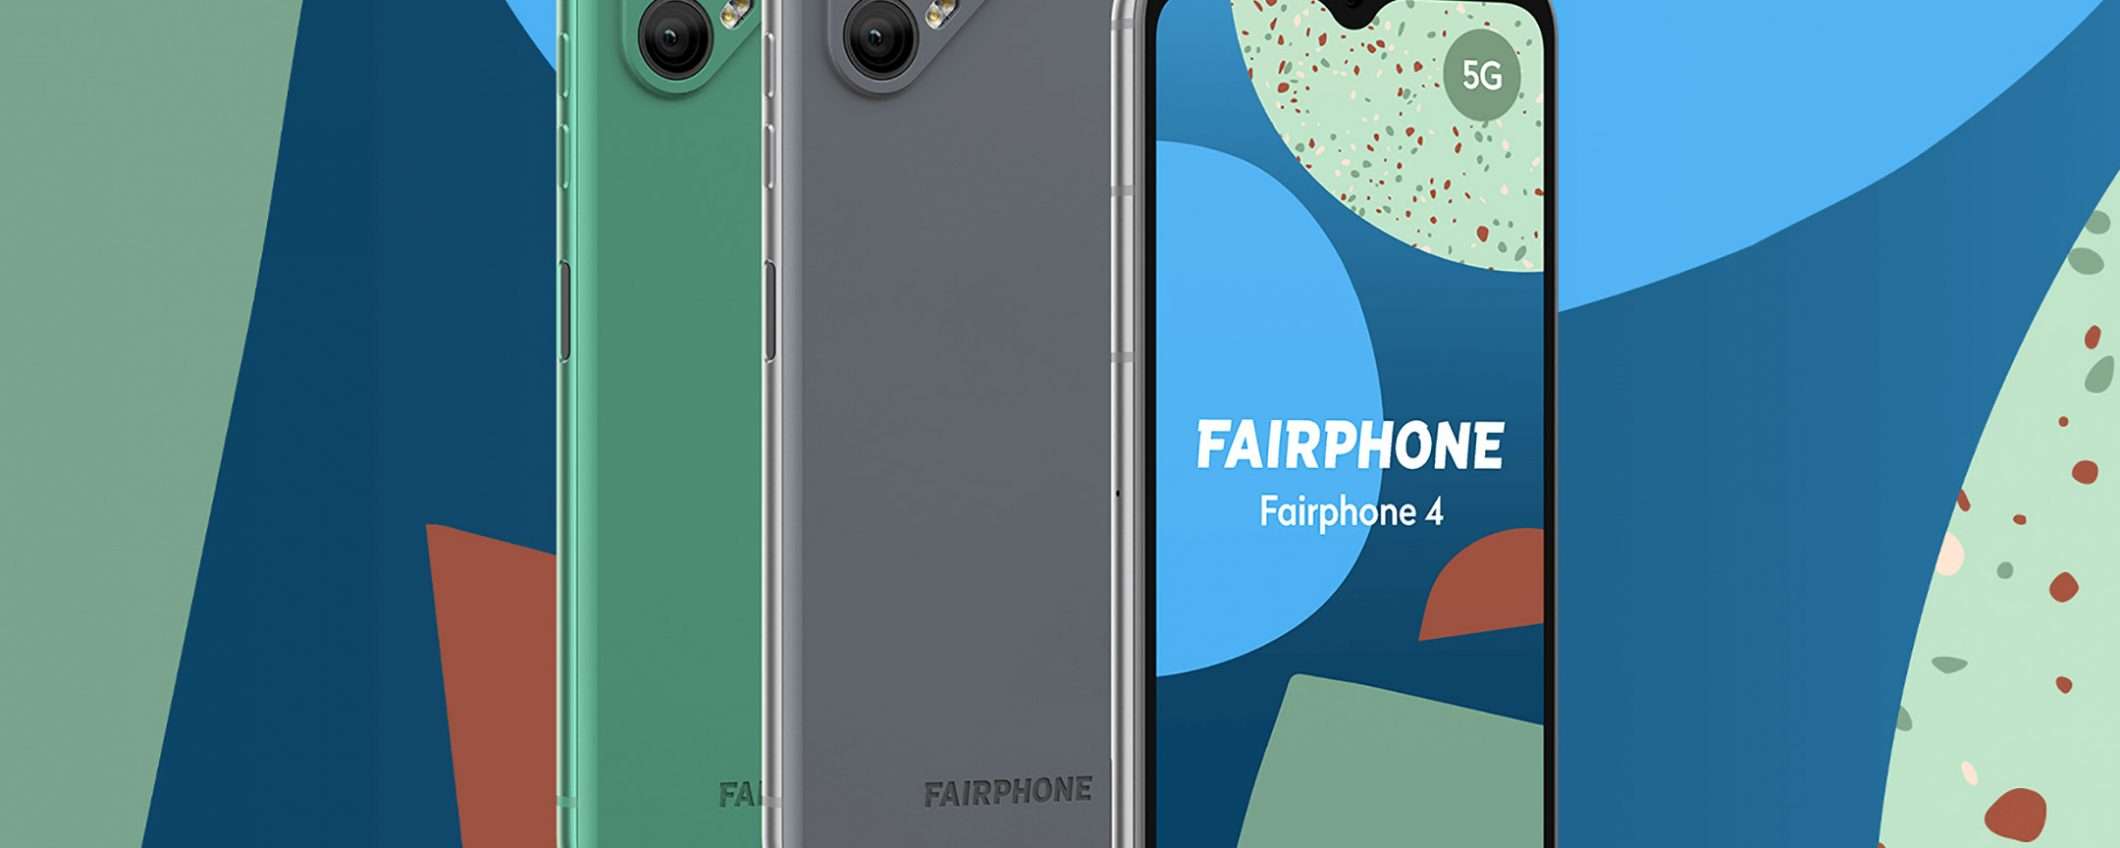 Fairphone 4, ritorna lo smartphone sostenibile